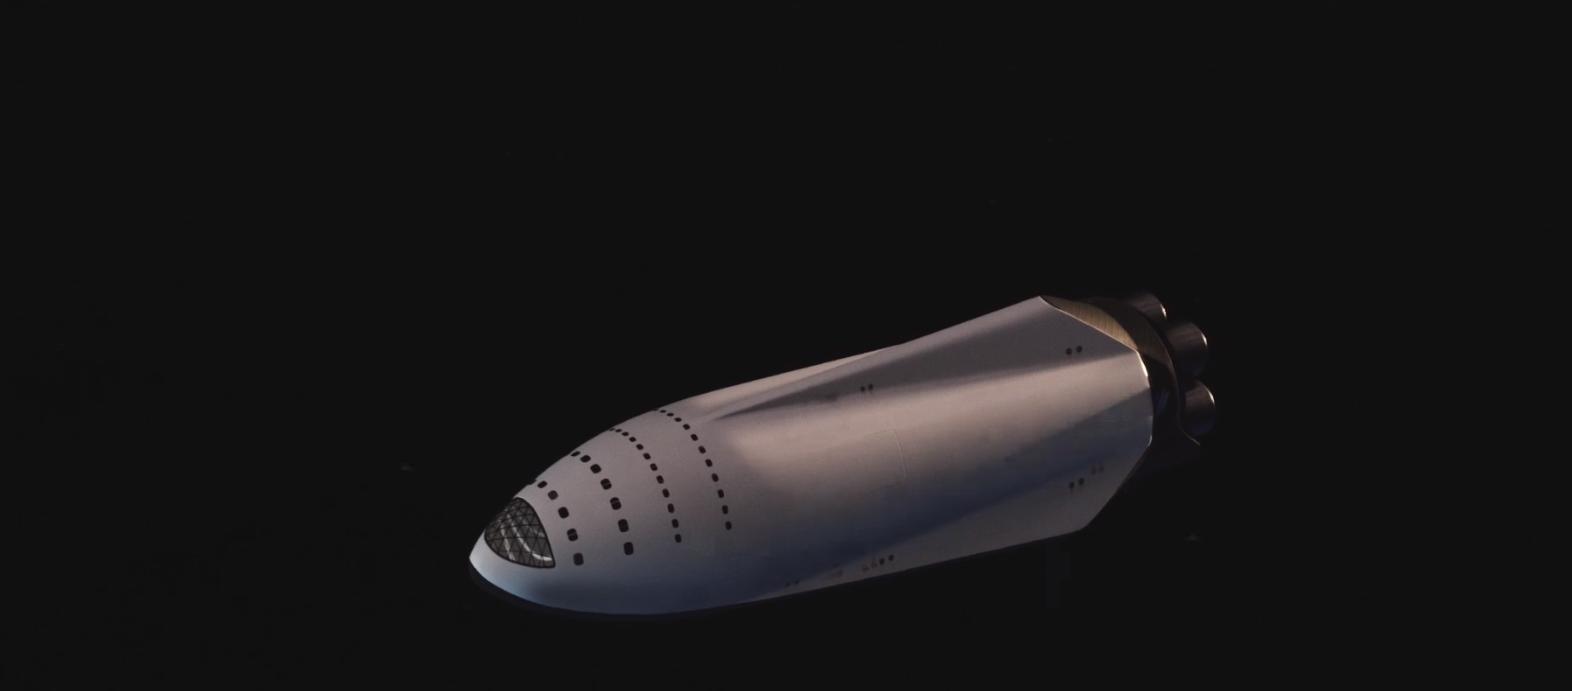 A SpaceX Kurva Nagy Űrhajójának (Big Fucking Spaceship) látványterve